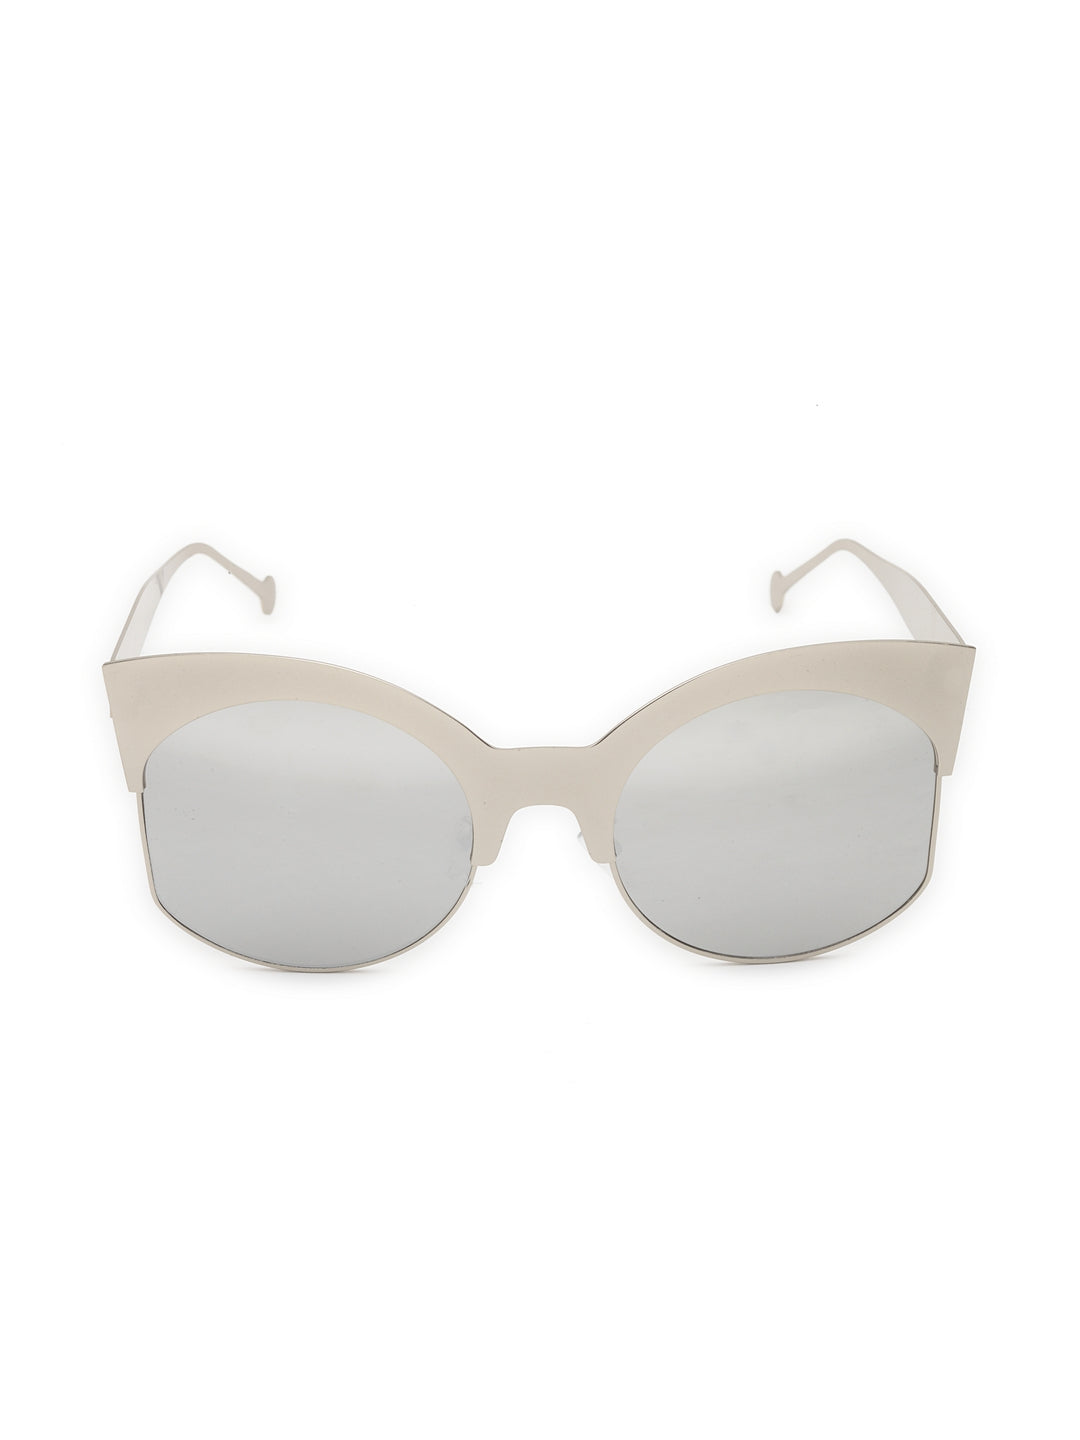 Oversized cateye fashion sunglasses